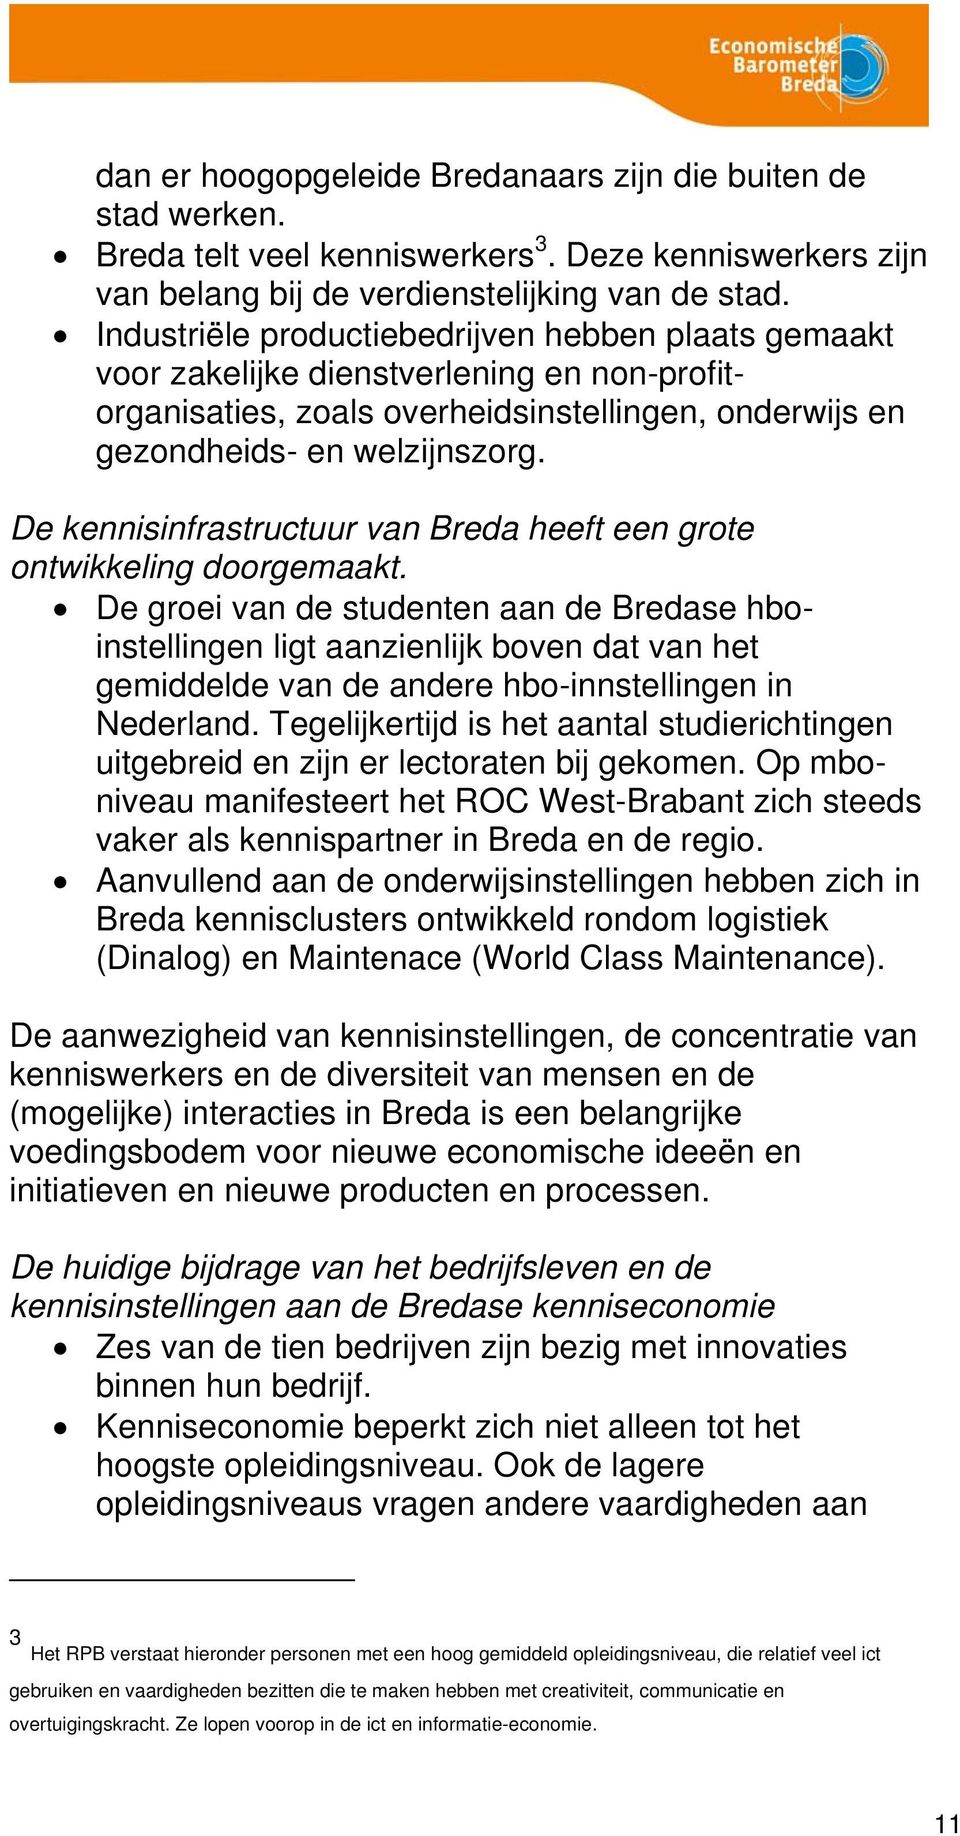 De kennisinfrastructuur van Breda heeft een grote ontwikkeling doorgemaakt.